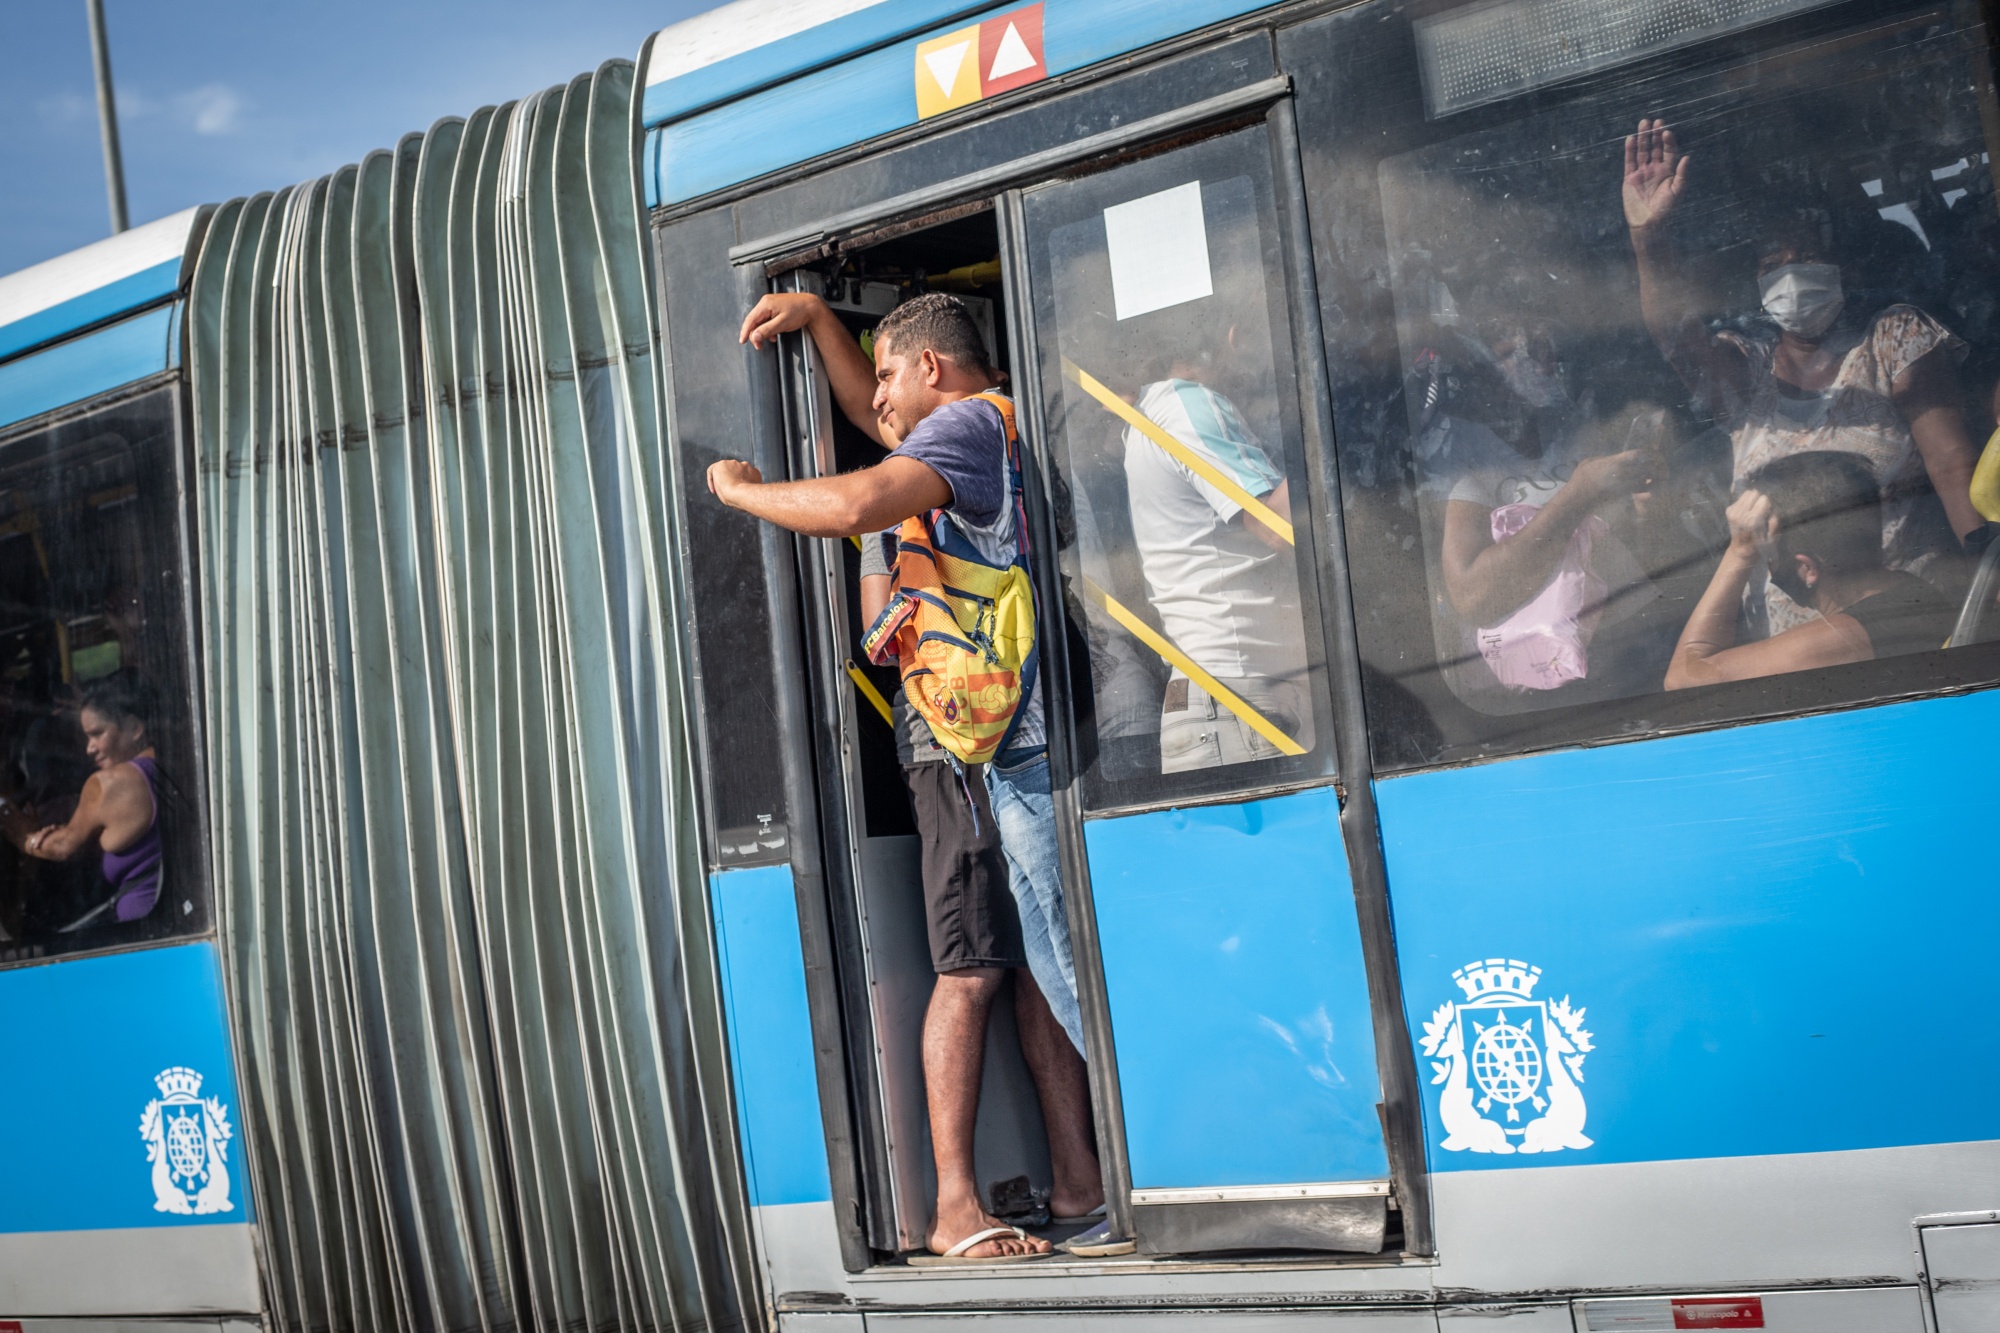 Os passageiros viajam no sistema de ônibus expresso (BRT) no Rio de Janeiro, Brasil, no dia 18 de março.